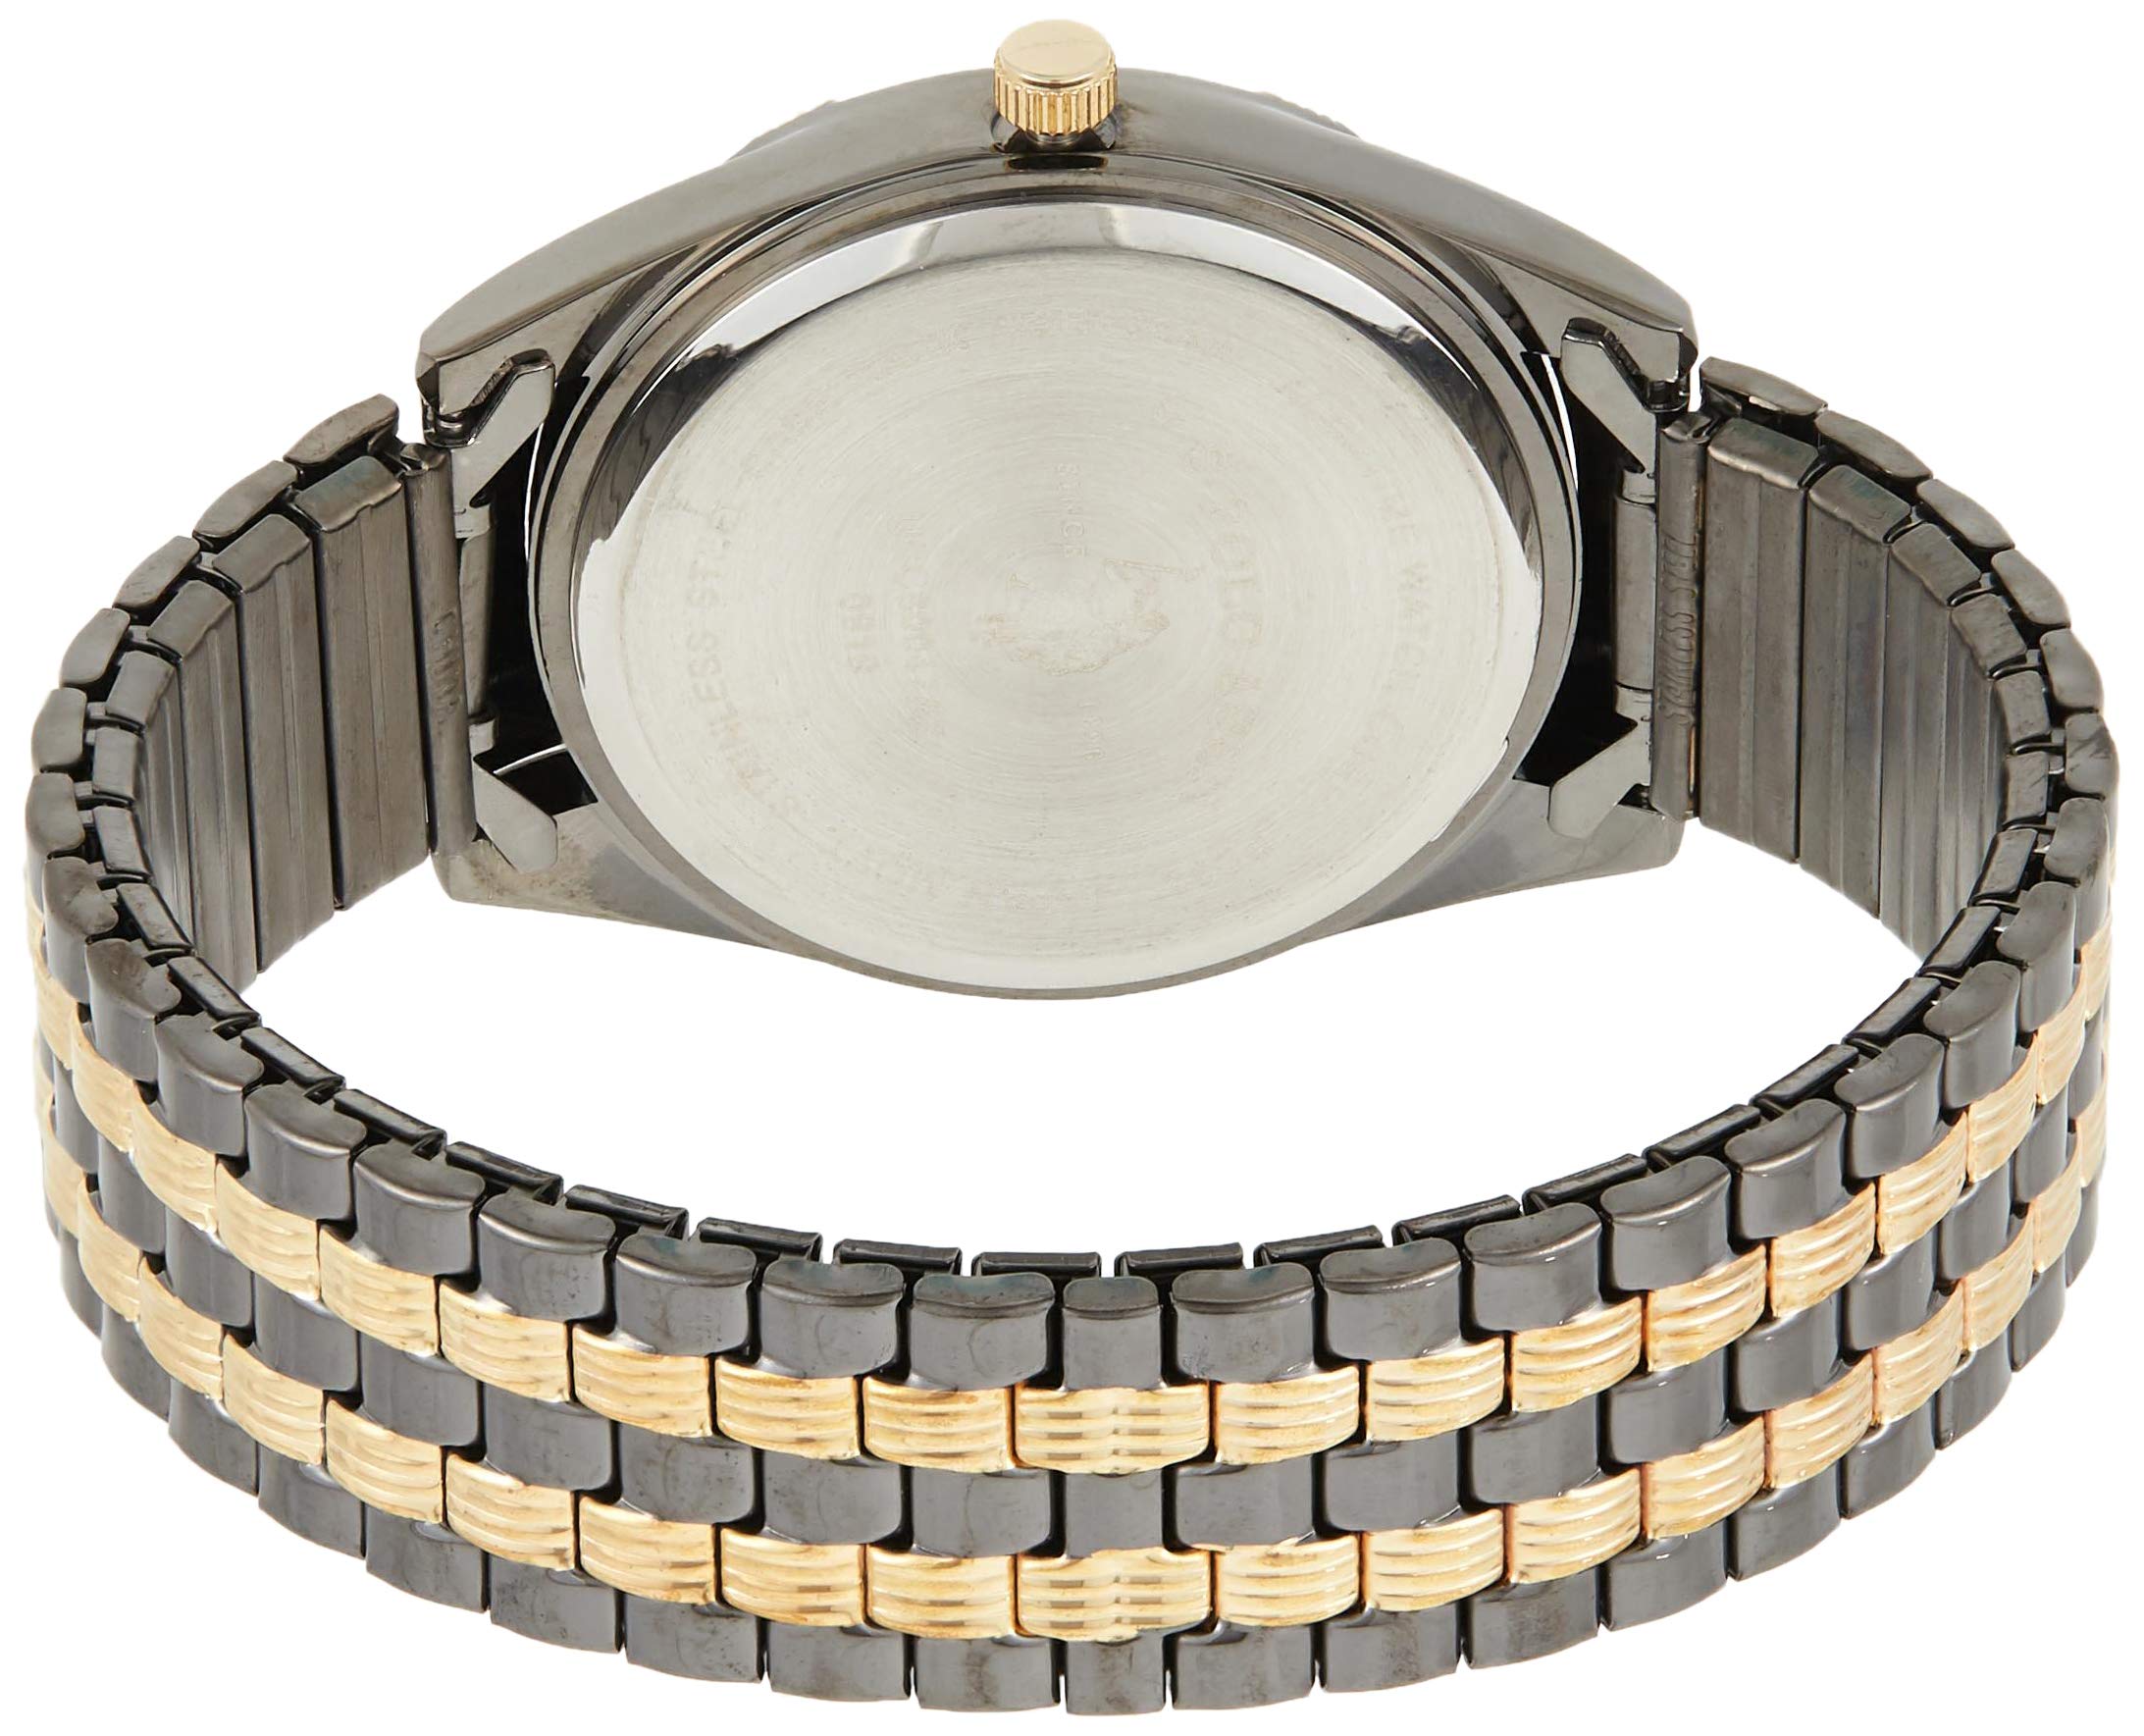 U.S. Polo Assn. Classic Men's USC80047 Two-Tone Watch Black-Dial Watch